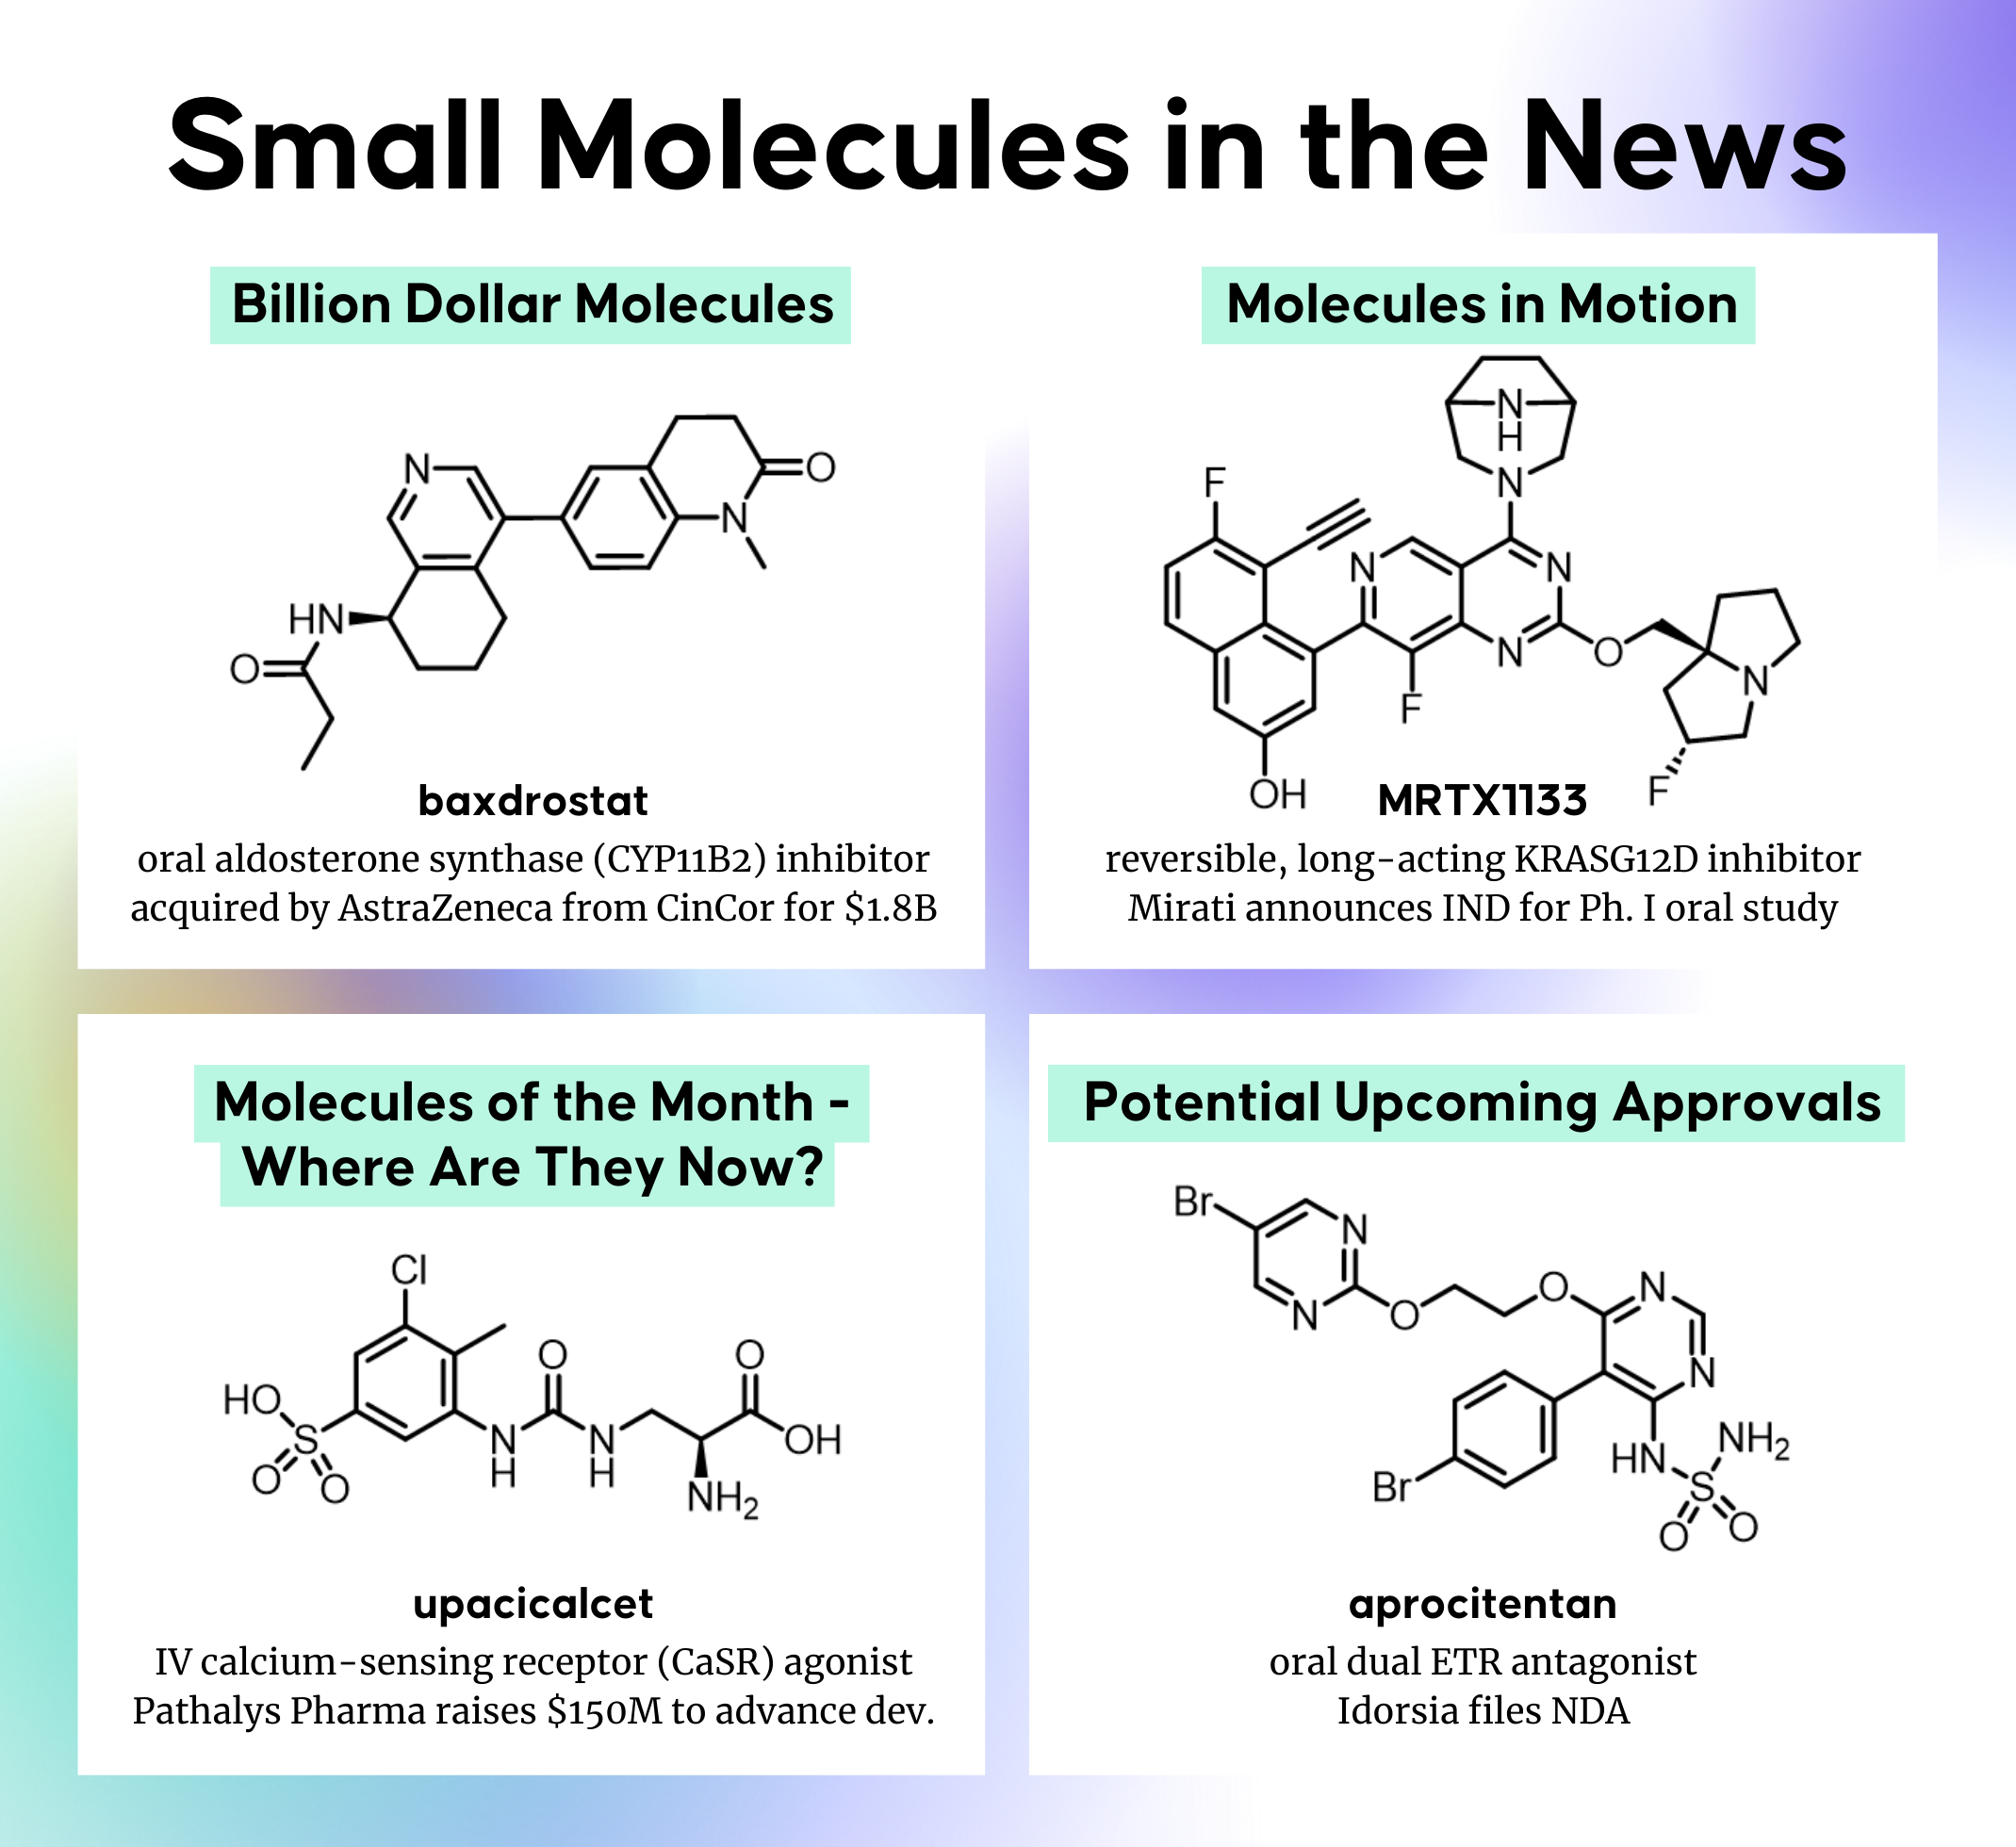 small molecules in the news, baxdrostat, MRTX1133, upacicalcet, aprocitentan|Small Molecules in the News|Small Molecules in the News|